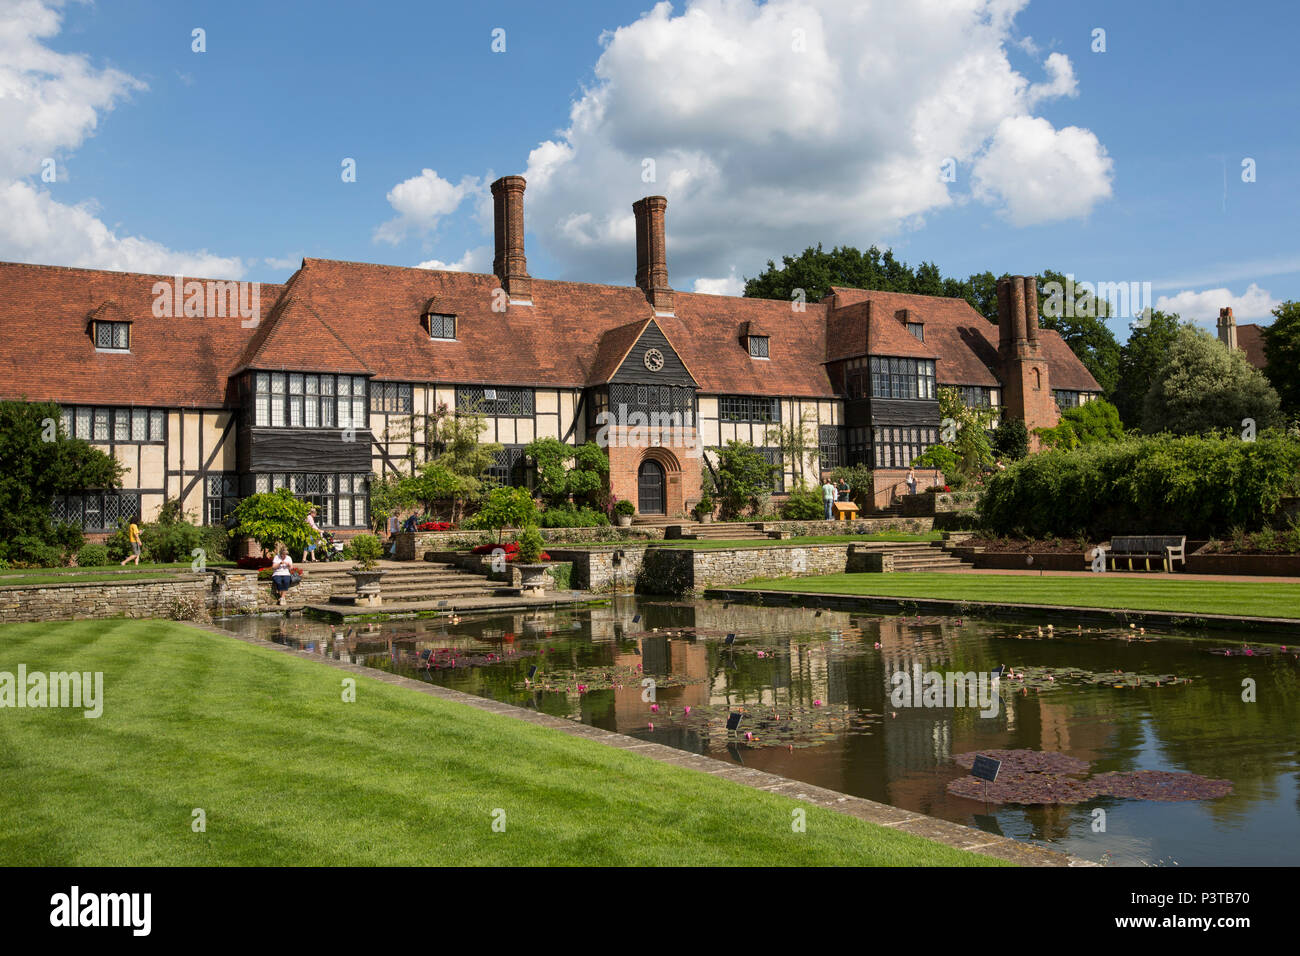 RHS Wisley Gardens, gepflanzt, Grenzen, üppigen Rosengärten und eine state-of-the-art Gewächshaus, Gartenbau Gärten in Surrey, England, U Stockfoto